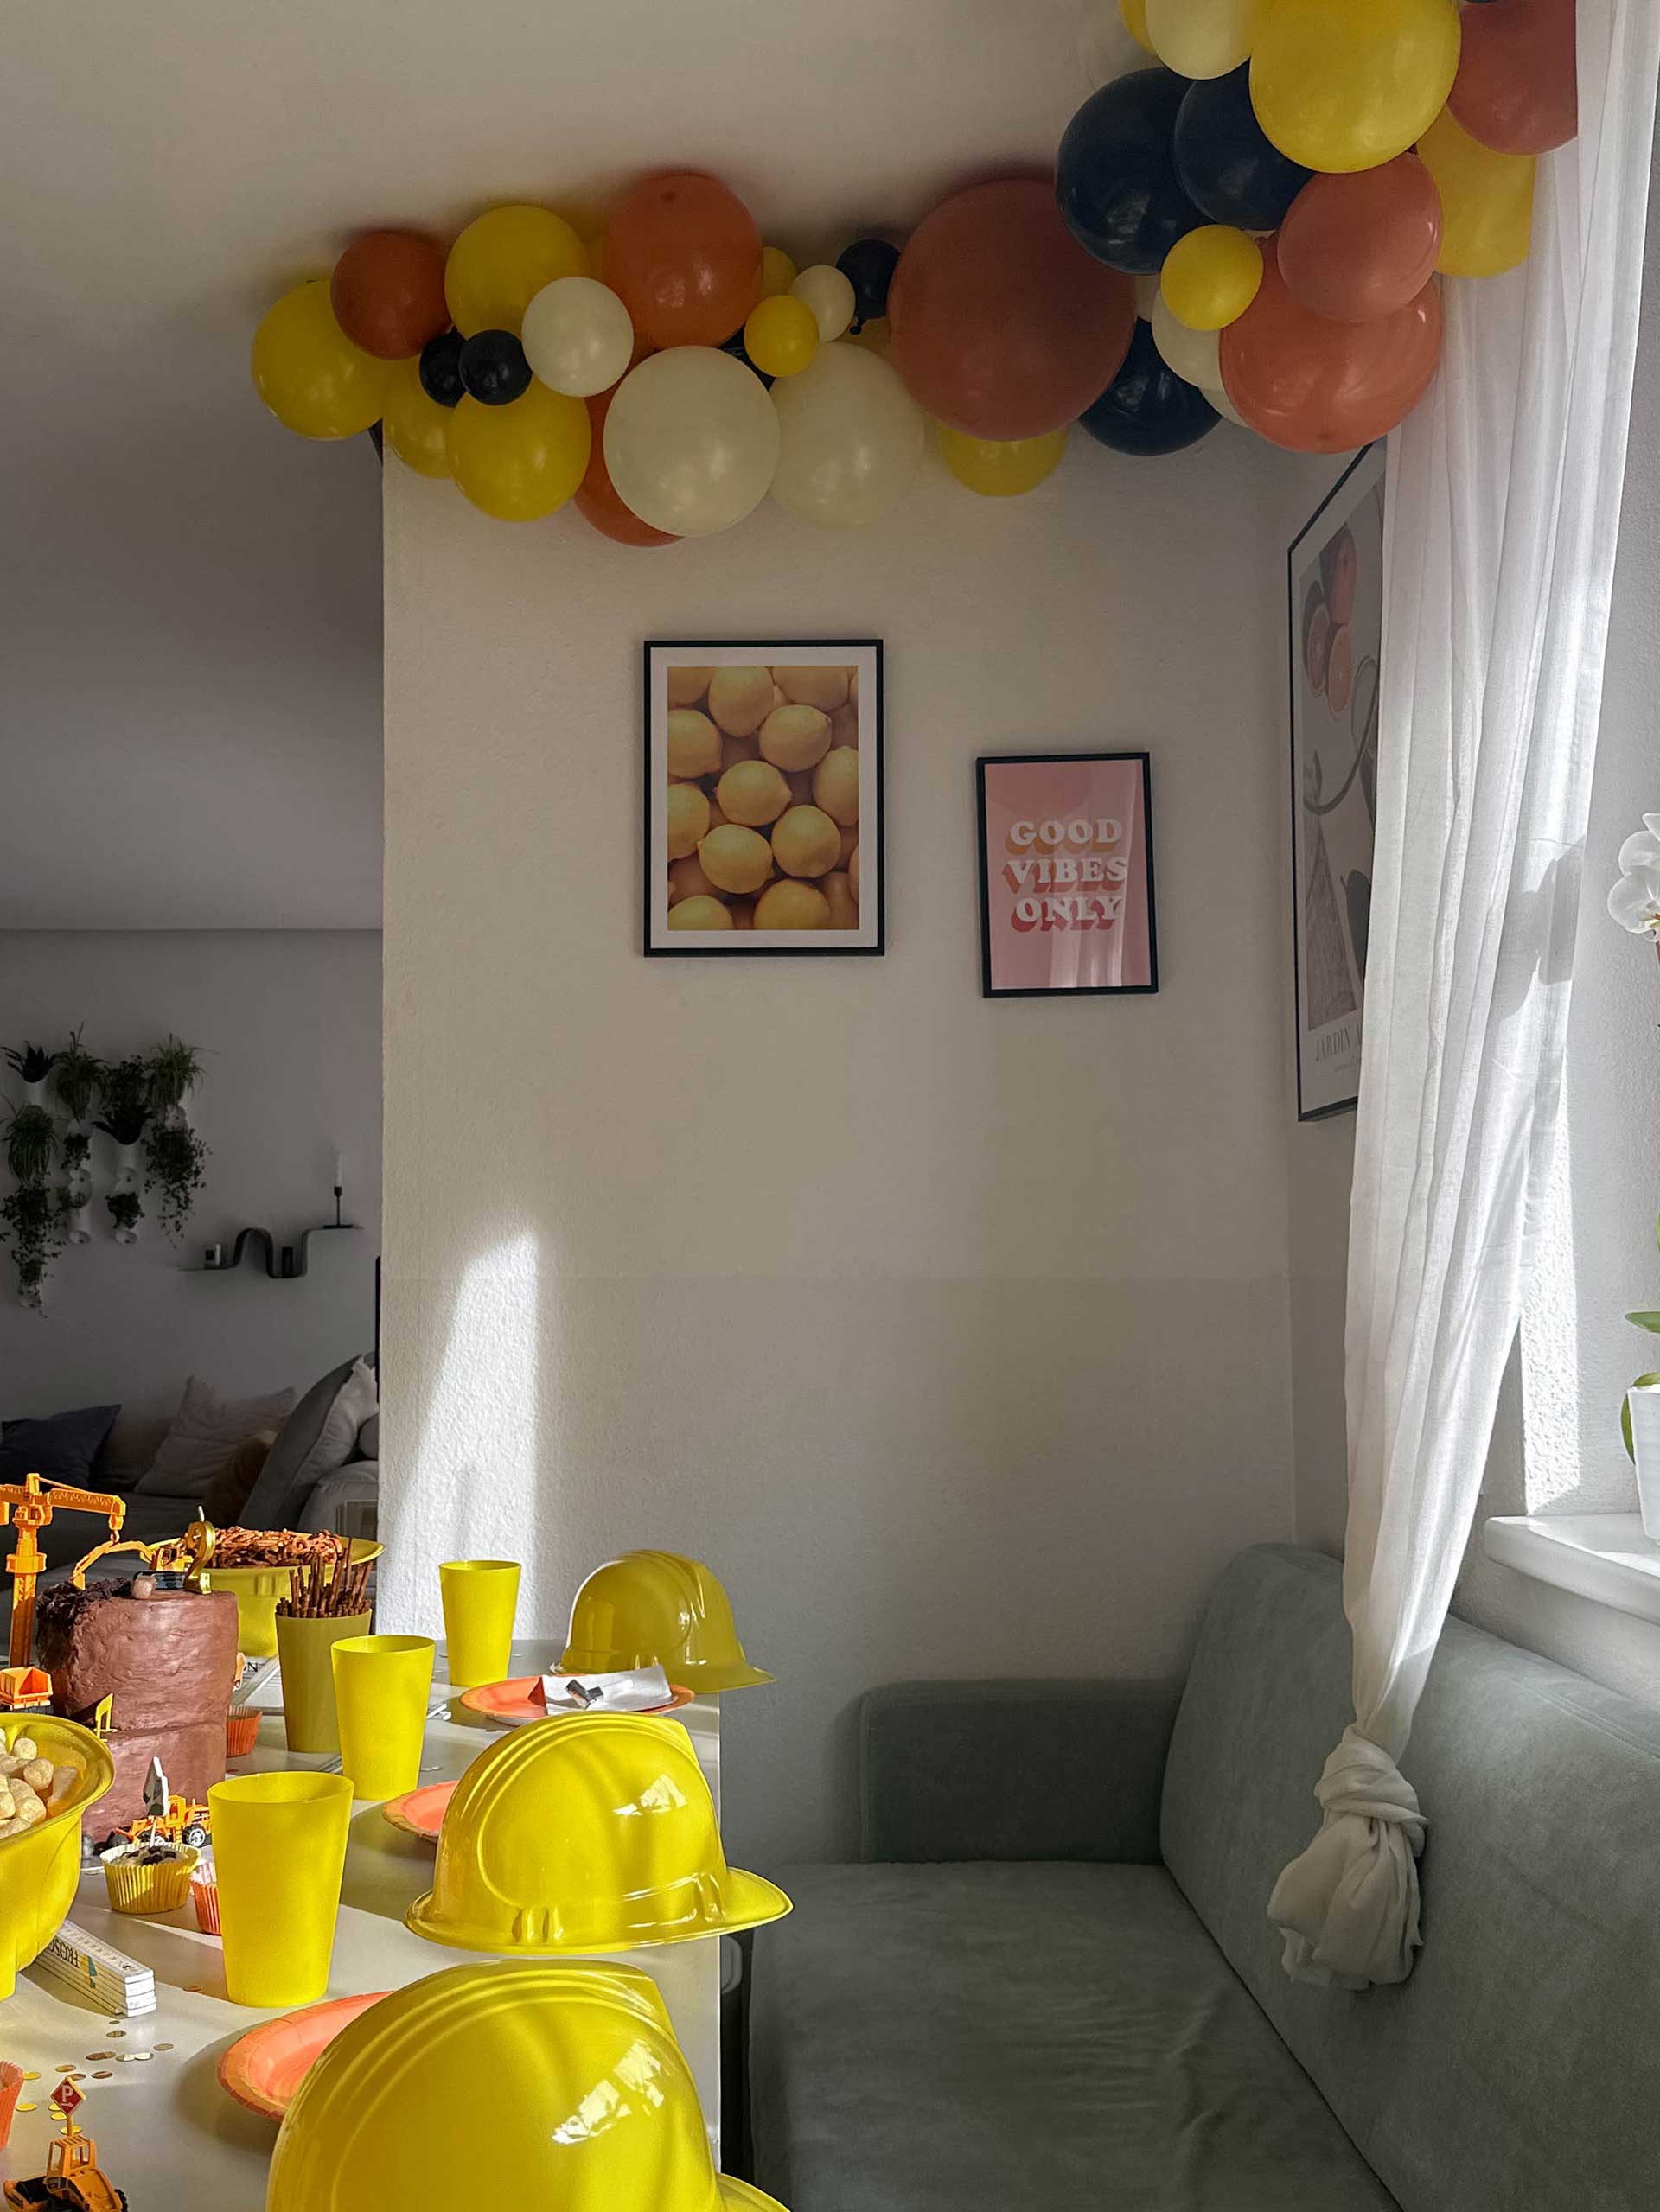 Baufahrzeuge, Absperrband, Luftballon-Girlanden – so war die Baustellen-Party meines Sohnes zum 2. Geburtstag. www.whoismocca.com